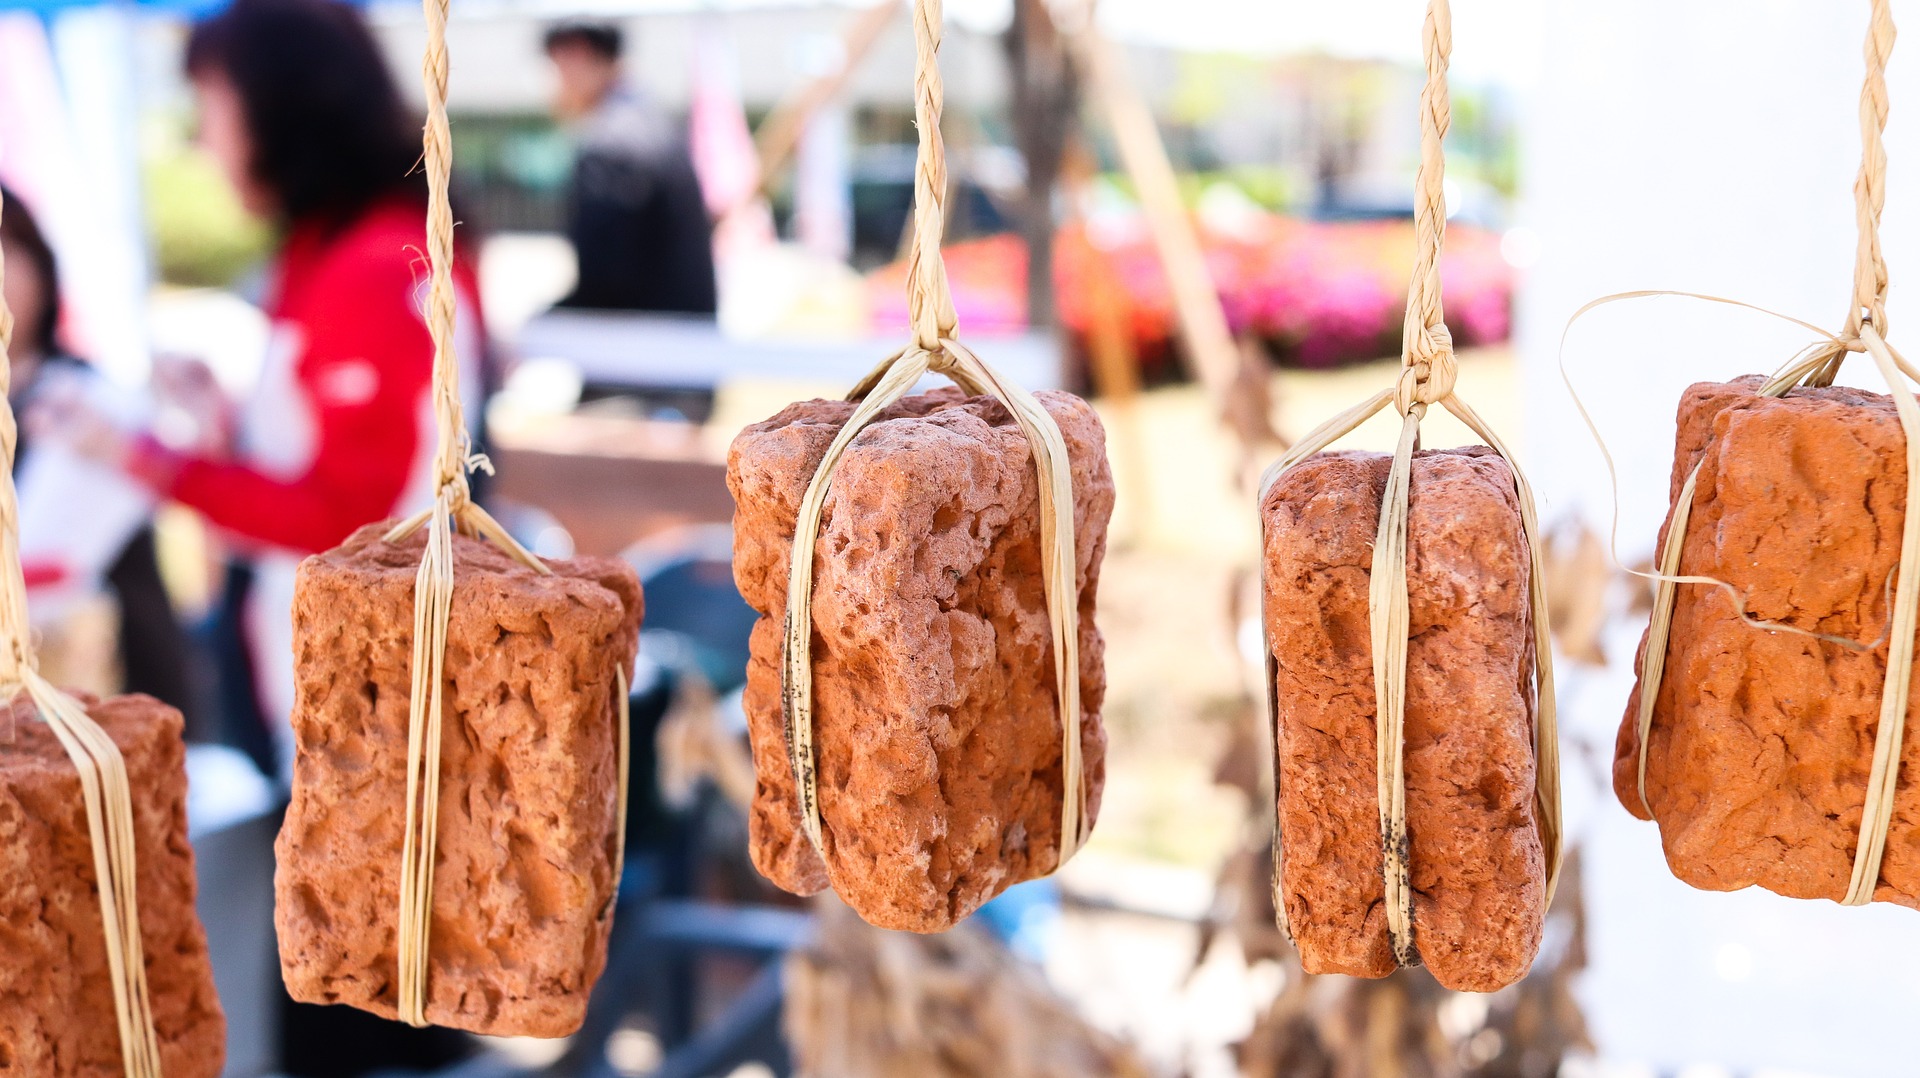 시장에서 콩으로 만든 메주를 새끼줄로 묶어 매달아 놓은 사진 - 태양인(太陽人)에게 맞는 음식